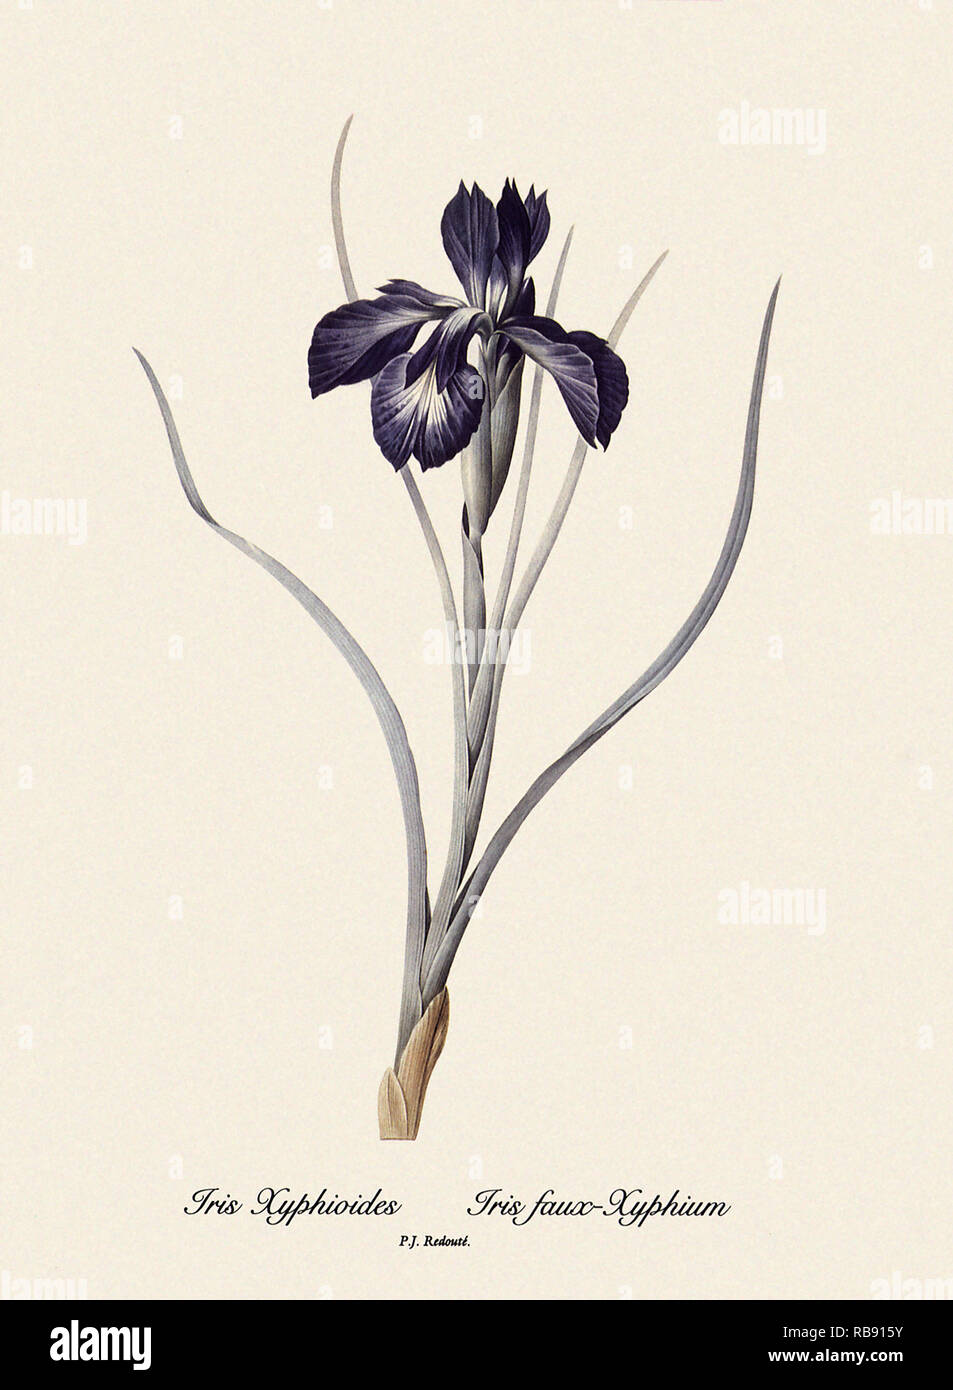 Iris Xyphioides, Iris faux-Xyphium Foto Stock